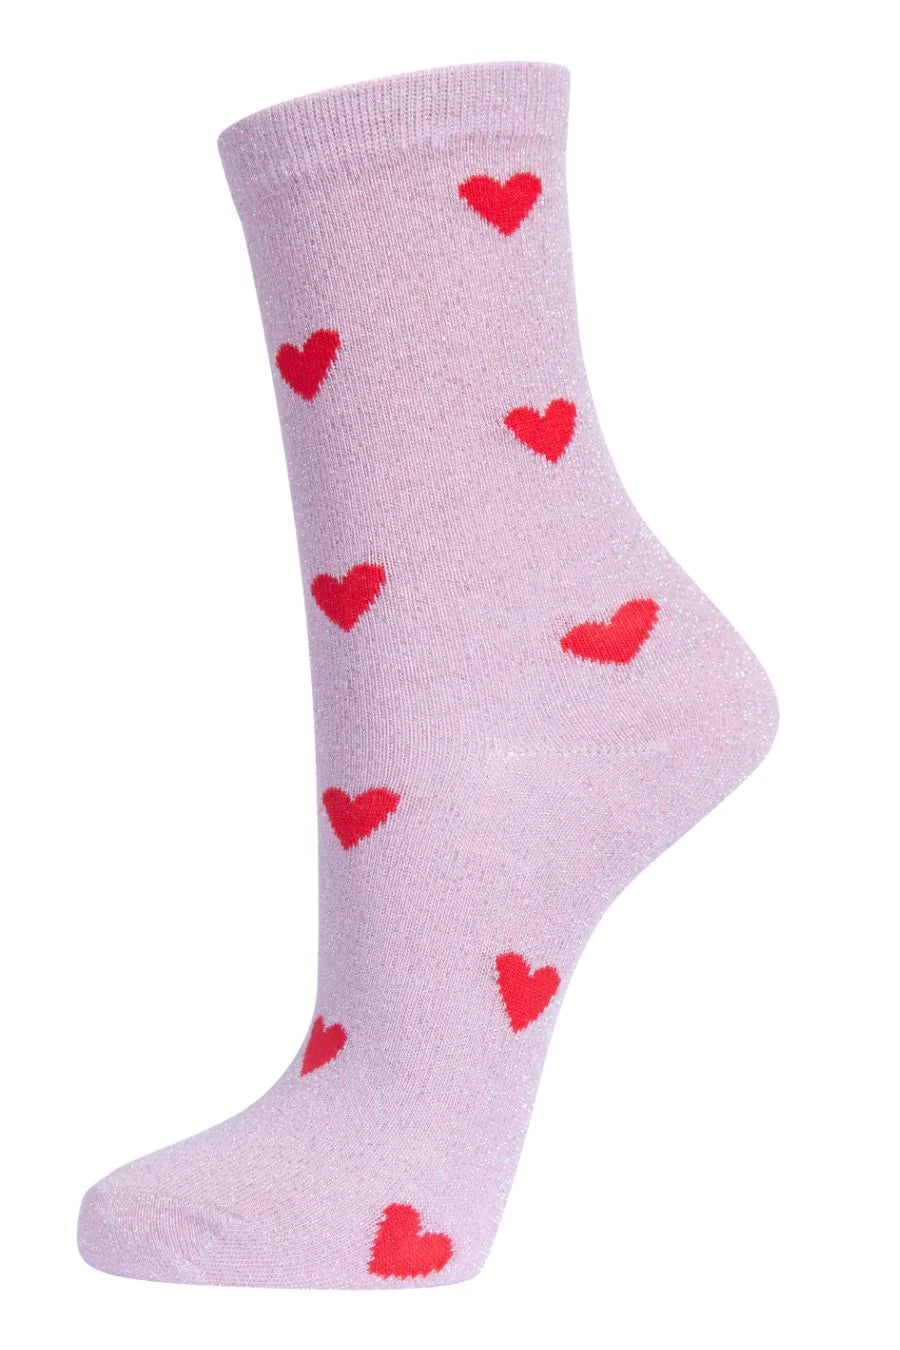 Glitter Socks Red Heart Love Hearts Ankle Socks